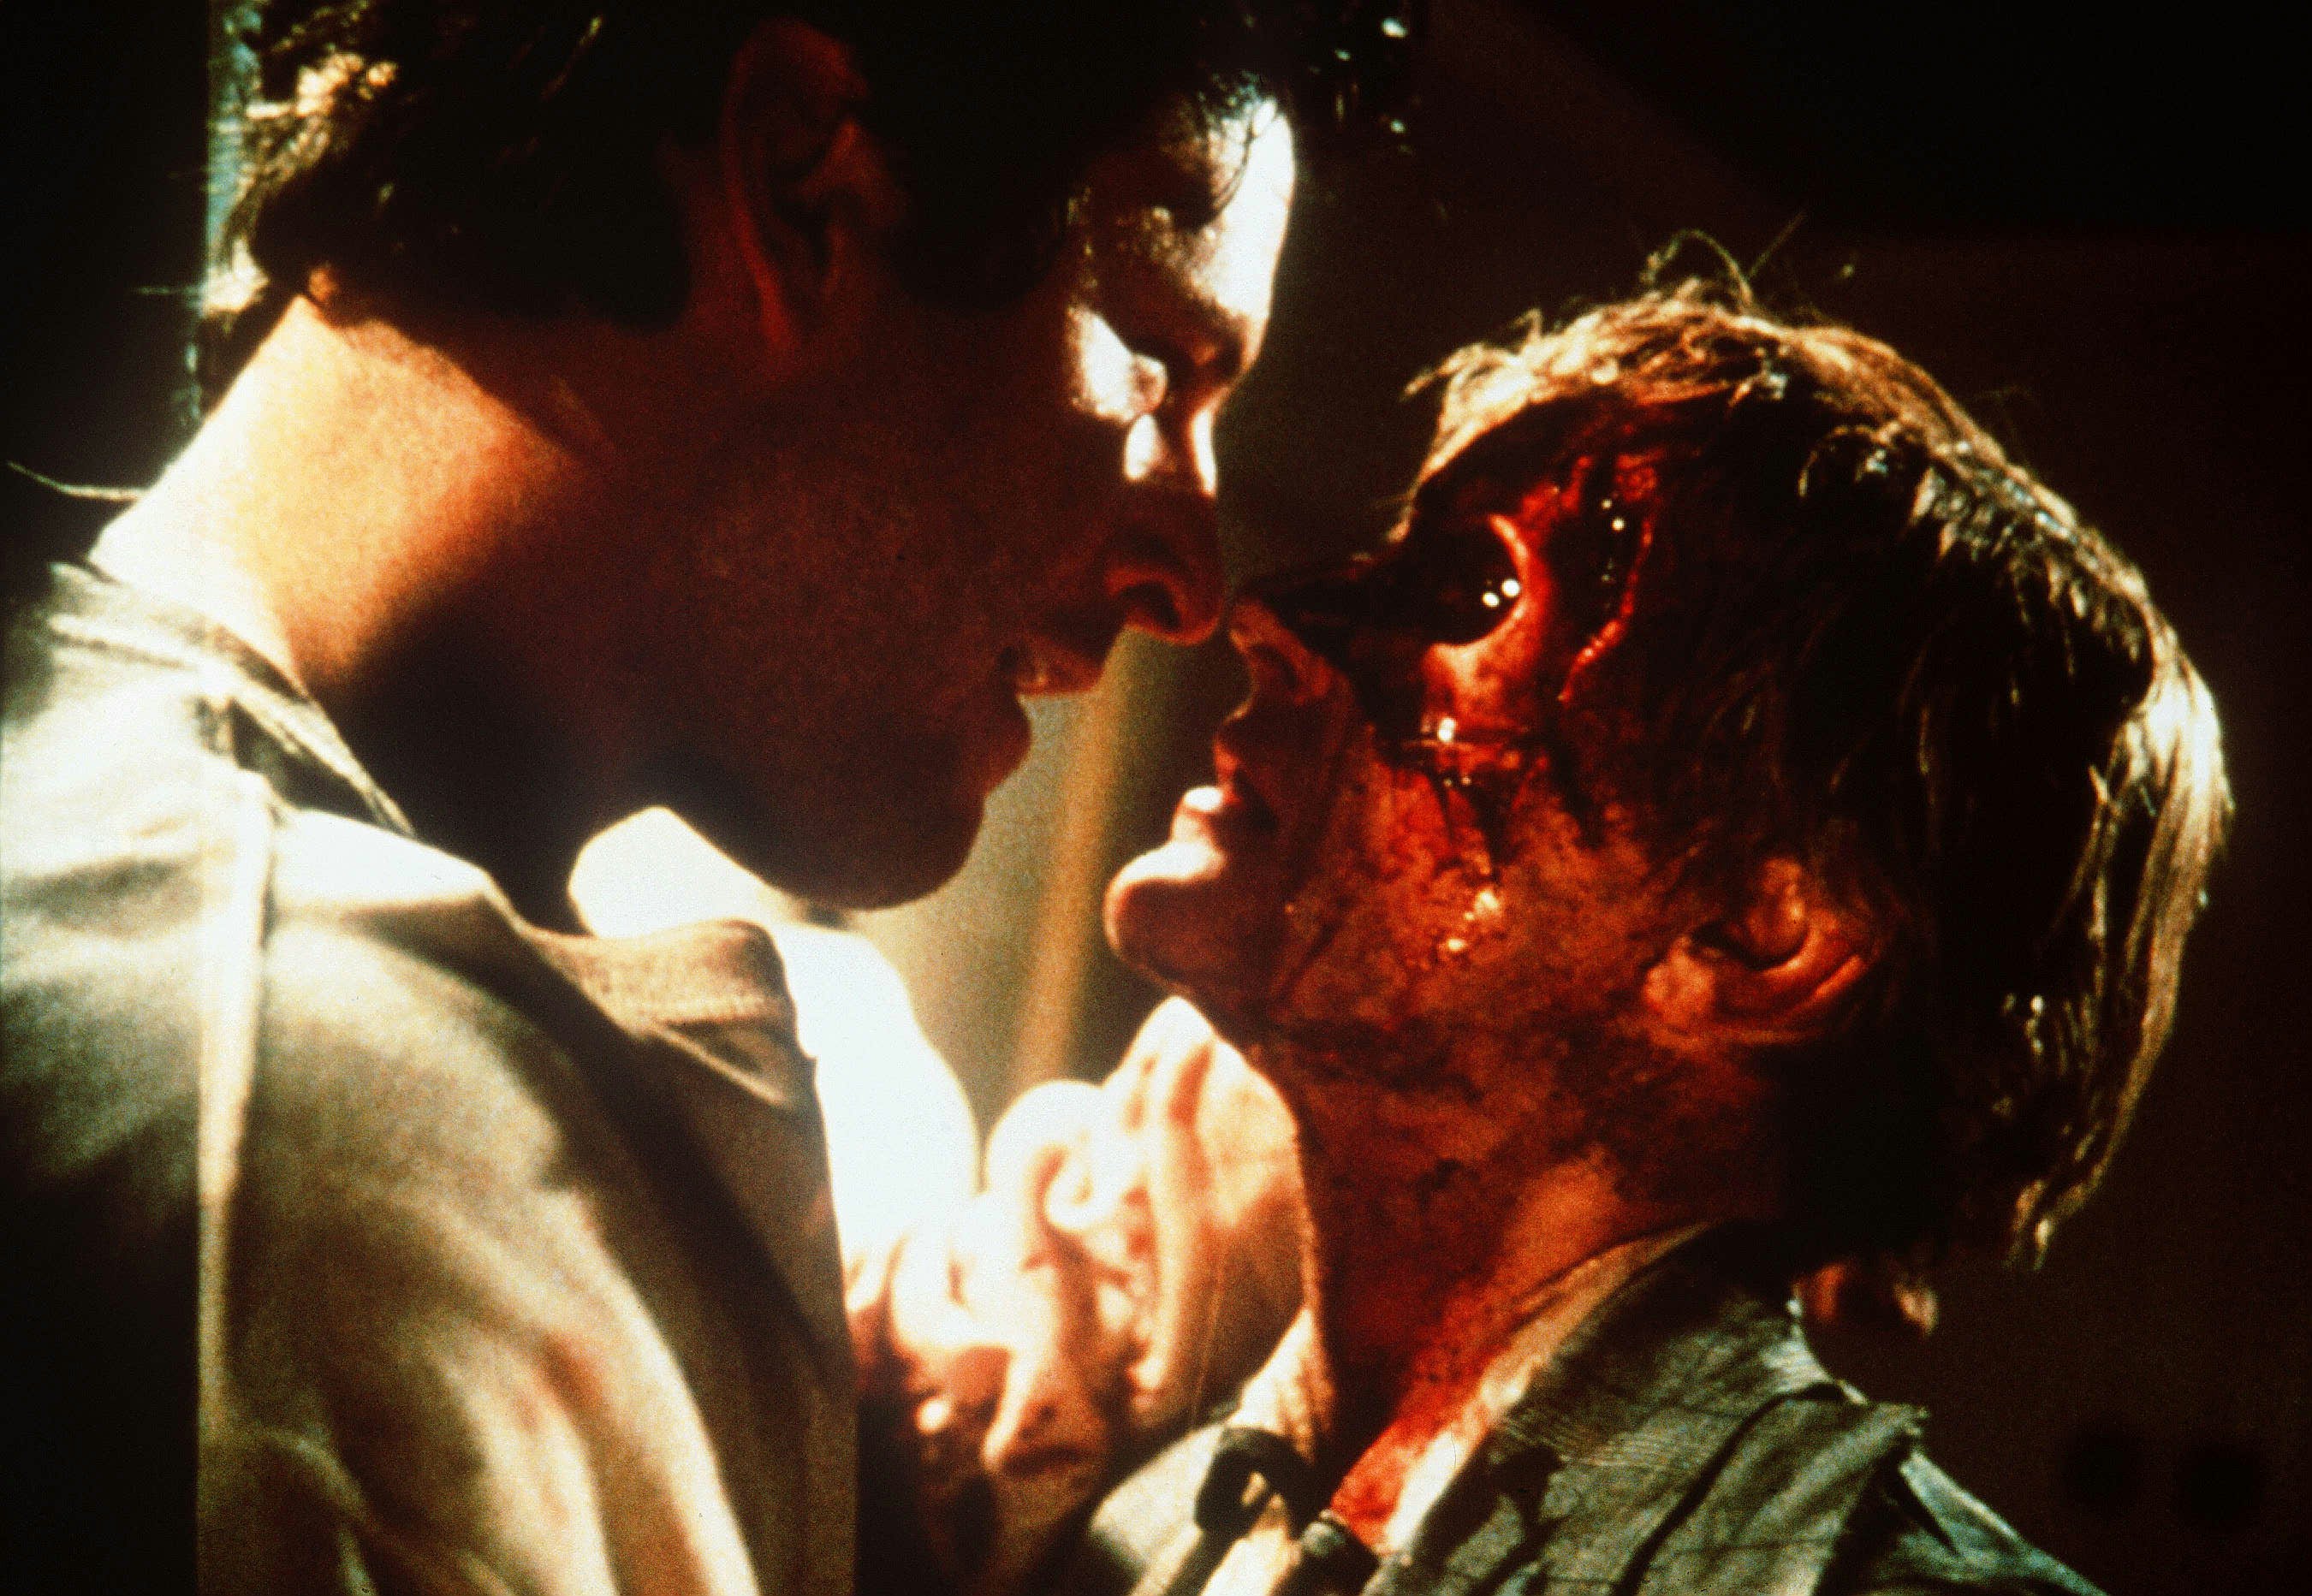 35 лет назад Стивен Кинг снял культовый триллер о зомби с участием двух недооцененных легенд научной фантастики.